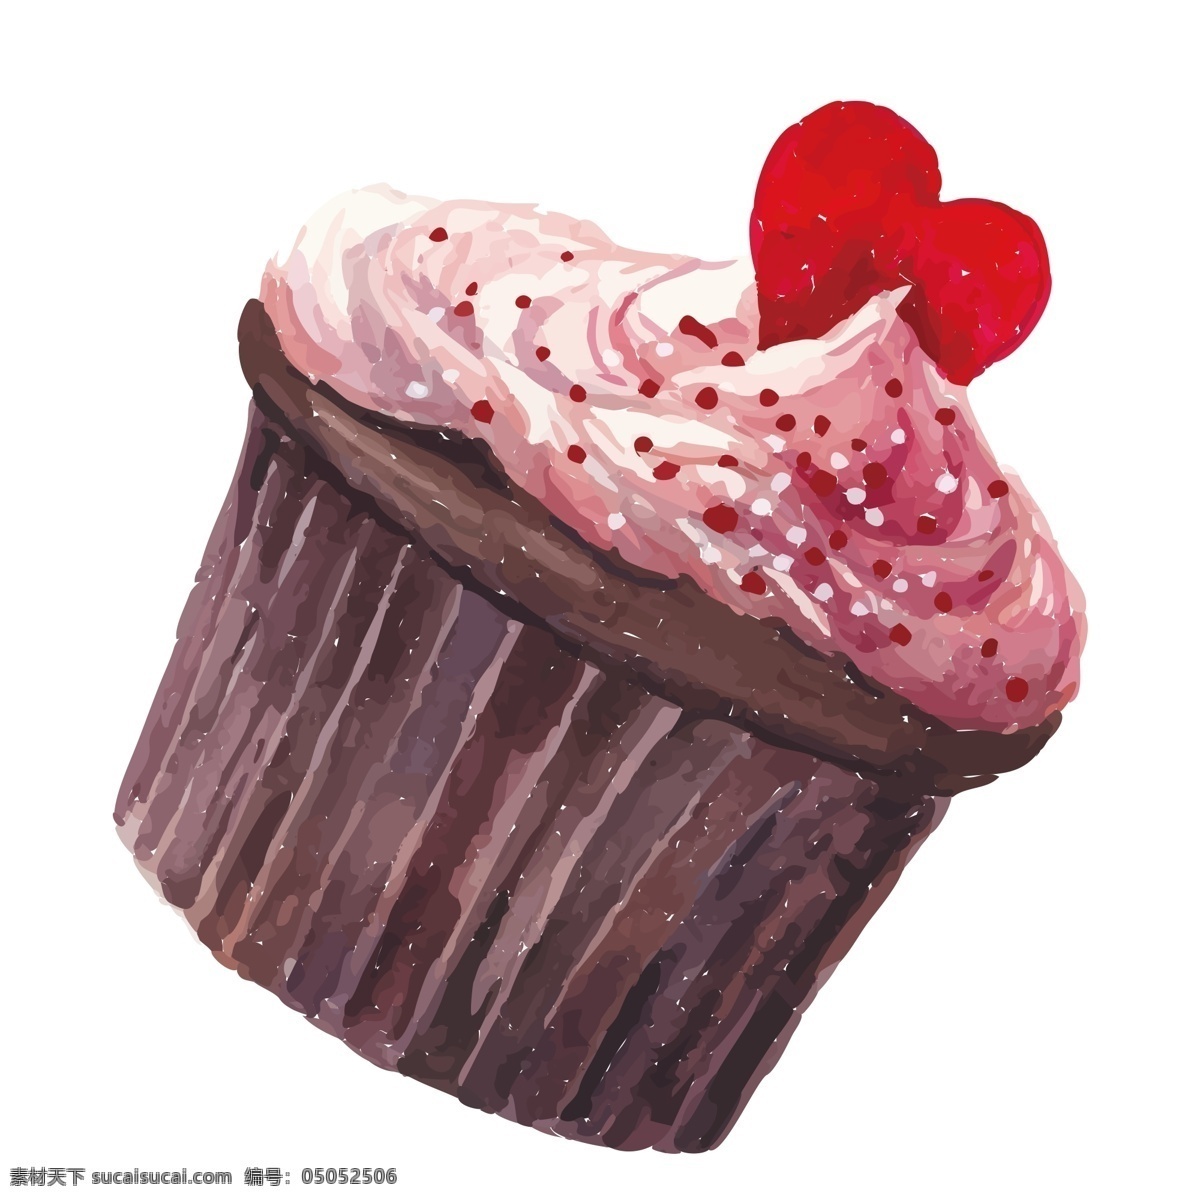 美味 草莓 纸杯 蛋糕 装饰 元素 装饰元素 手绘 纸杯蛋糕 食物 甜点 爱心 巧克力